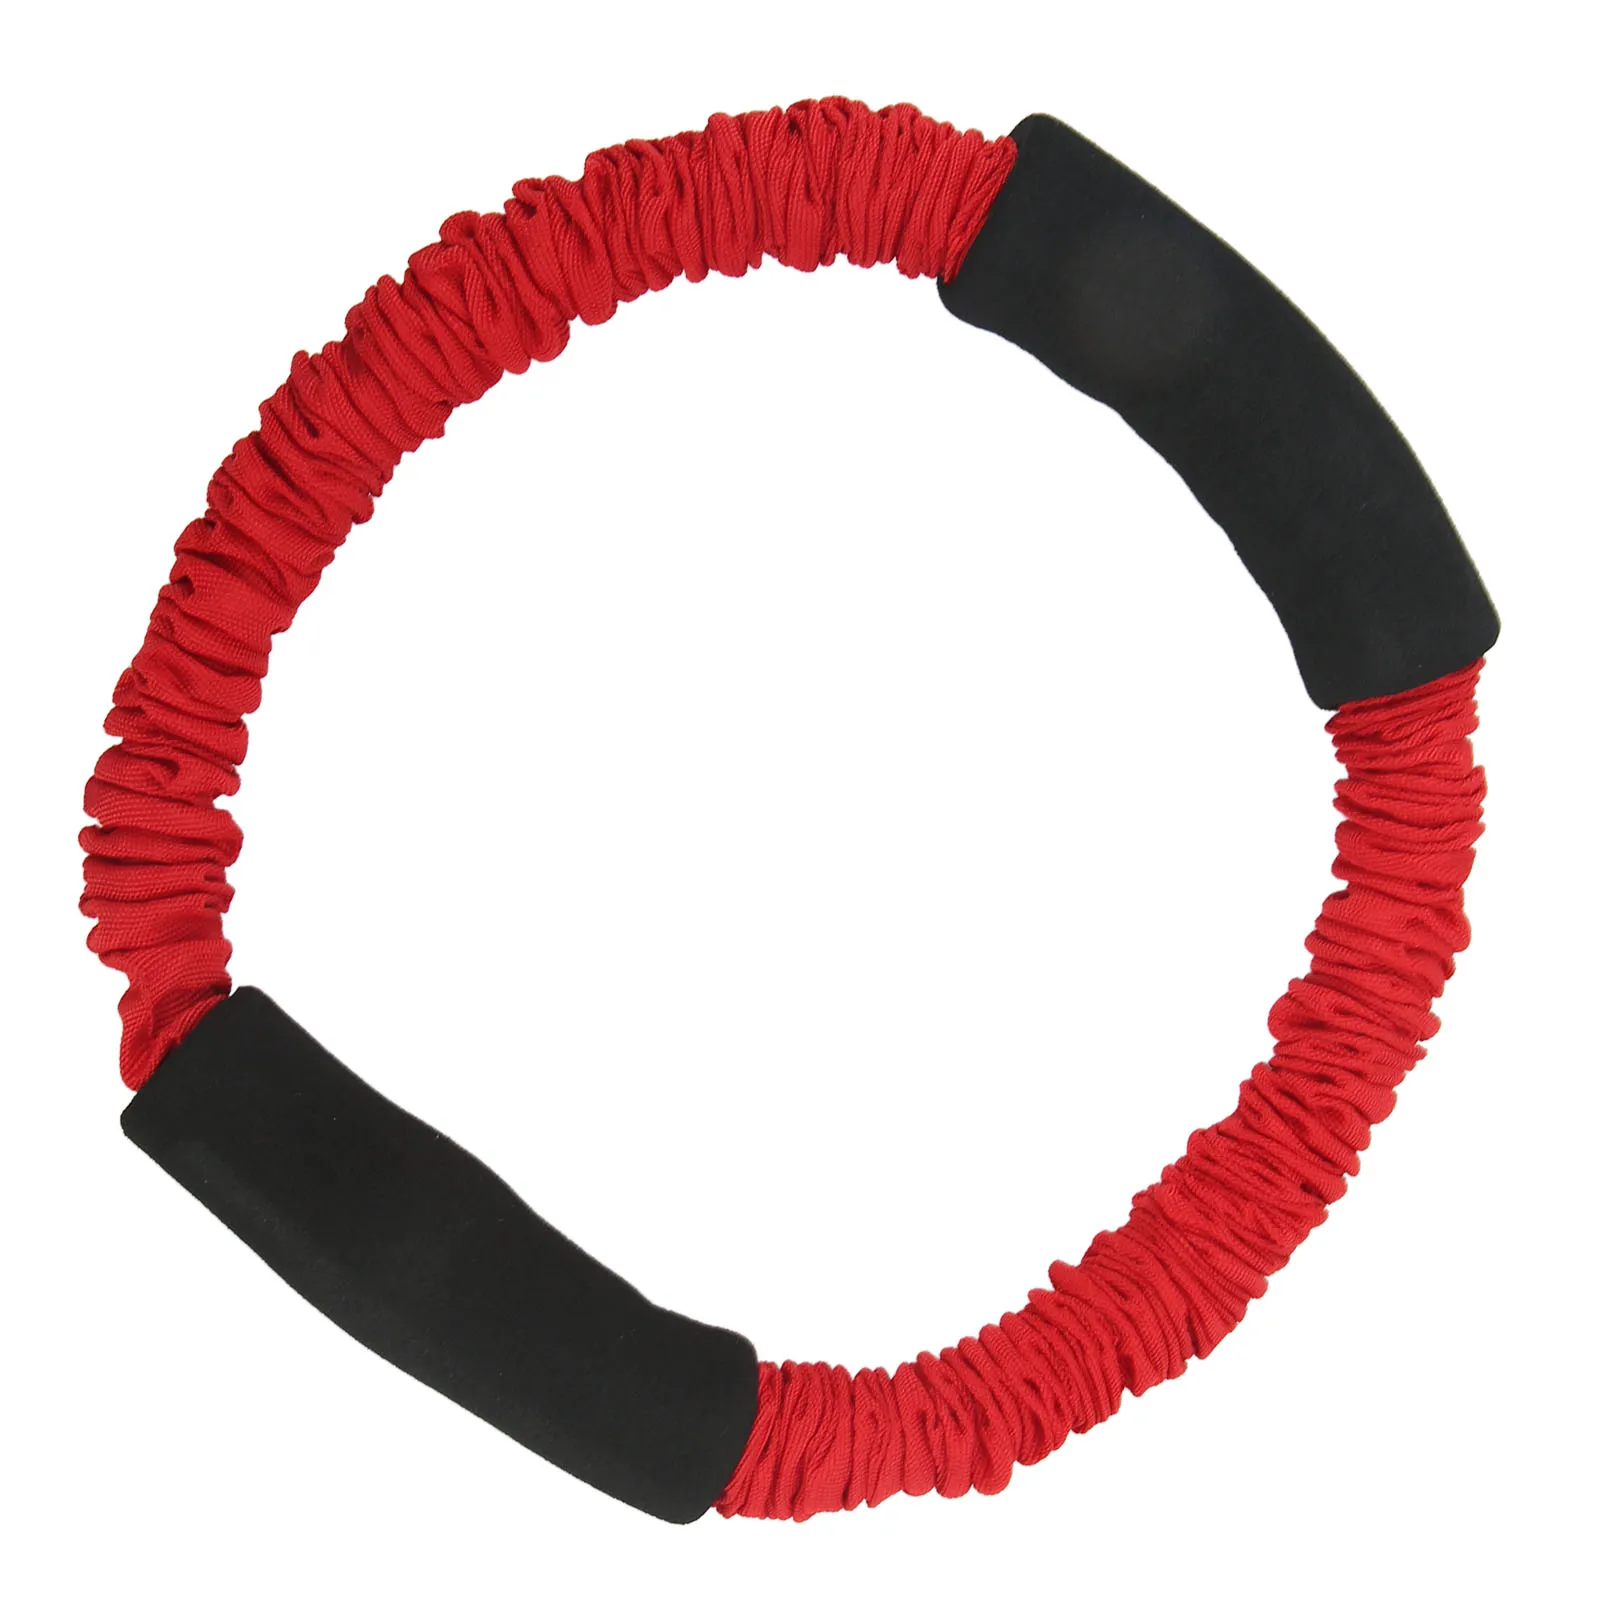 La Fuerza de los brazos Tire de la Cuerda de Látex Acción Correctiva Brazo de Tirar de la Cuerda Portátil Profesional para al aire libre . ' - ' . 1